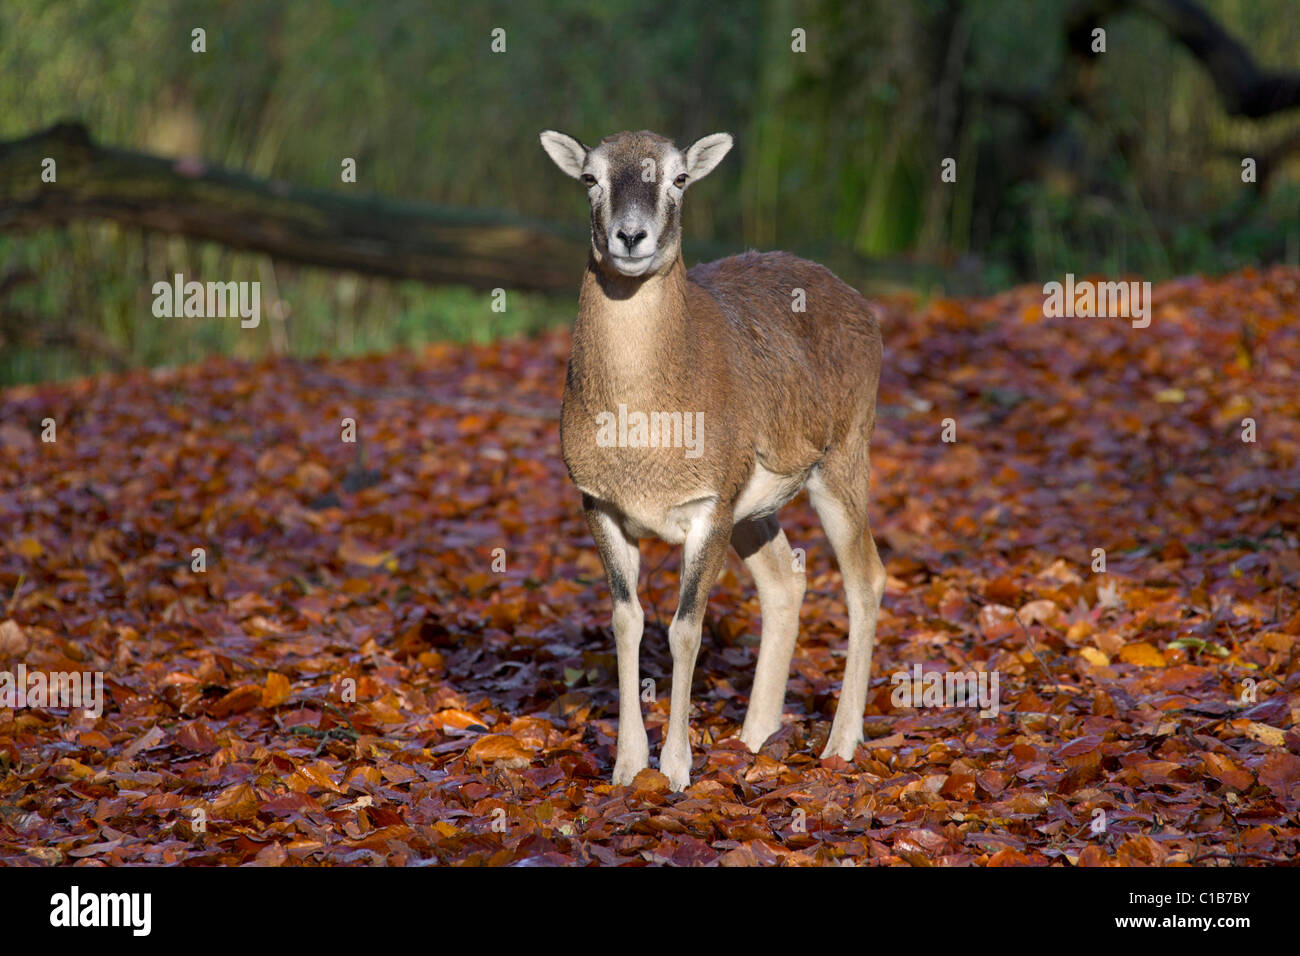 Mouflon (Ovis gmelini européenne / Ovis ammon musimon / Ovis orientalis musimon) brebis en forêt en automne, Allemagne Banque D'Images